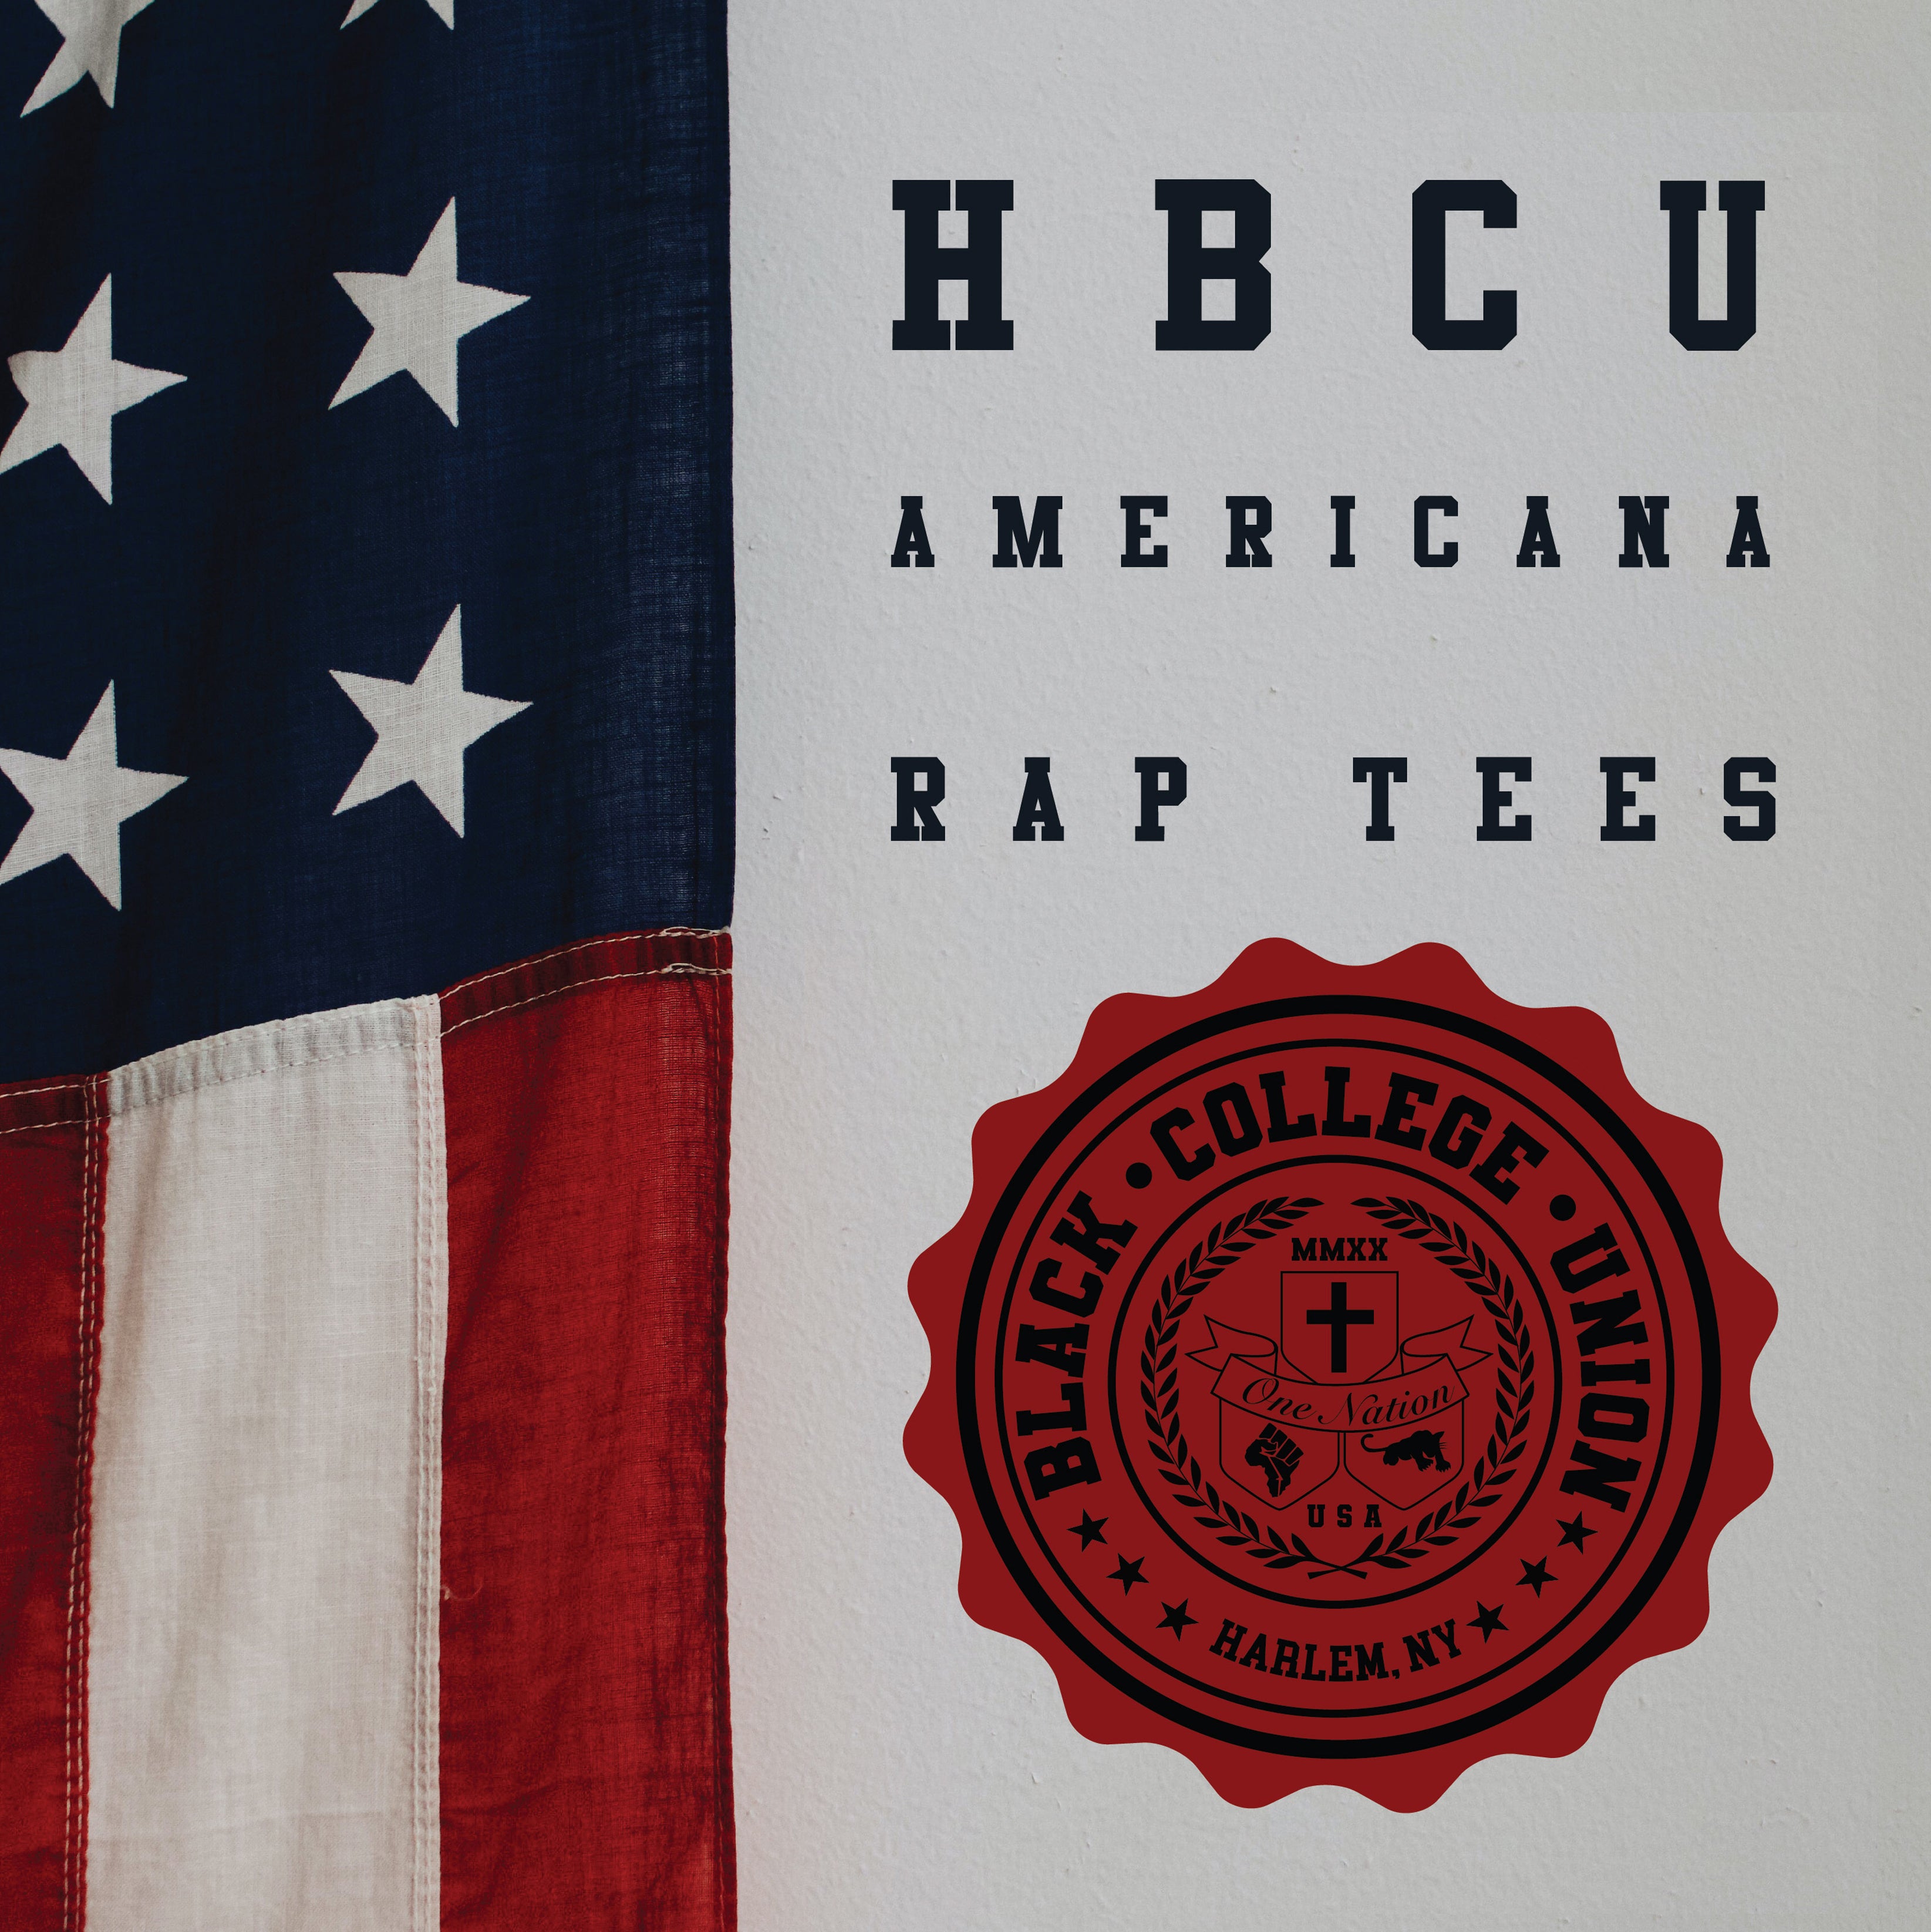 BCU X Champion Original HBCU Americana Rap Tee - West Virginia State [WVSU]